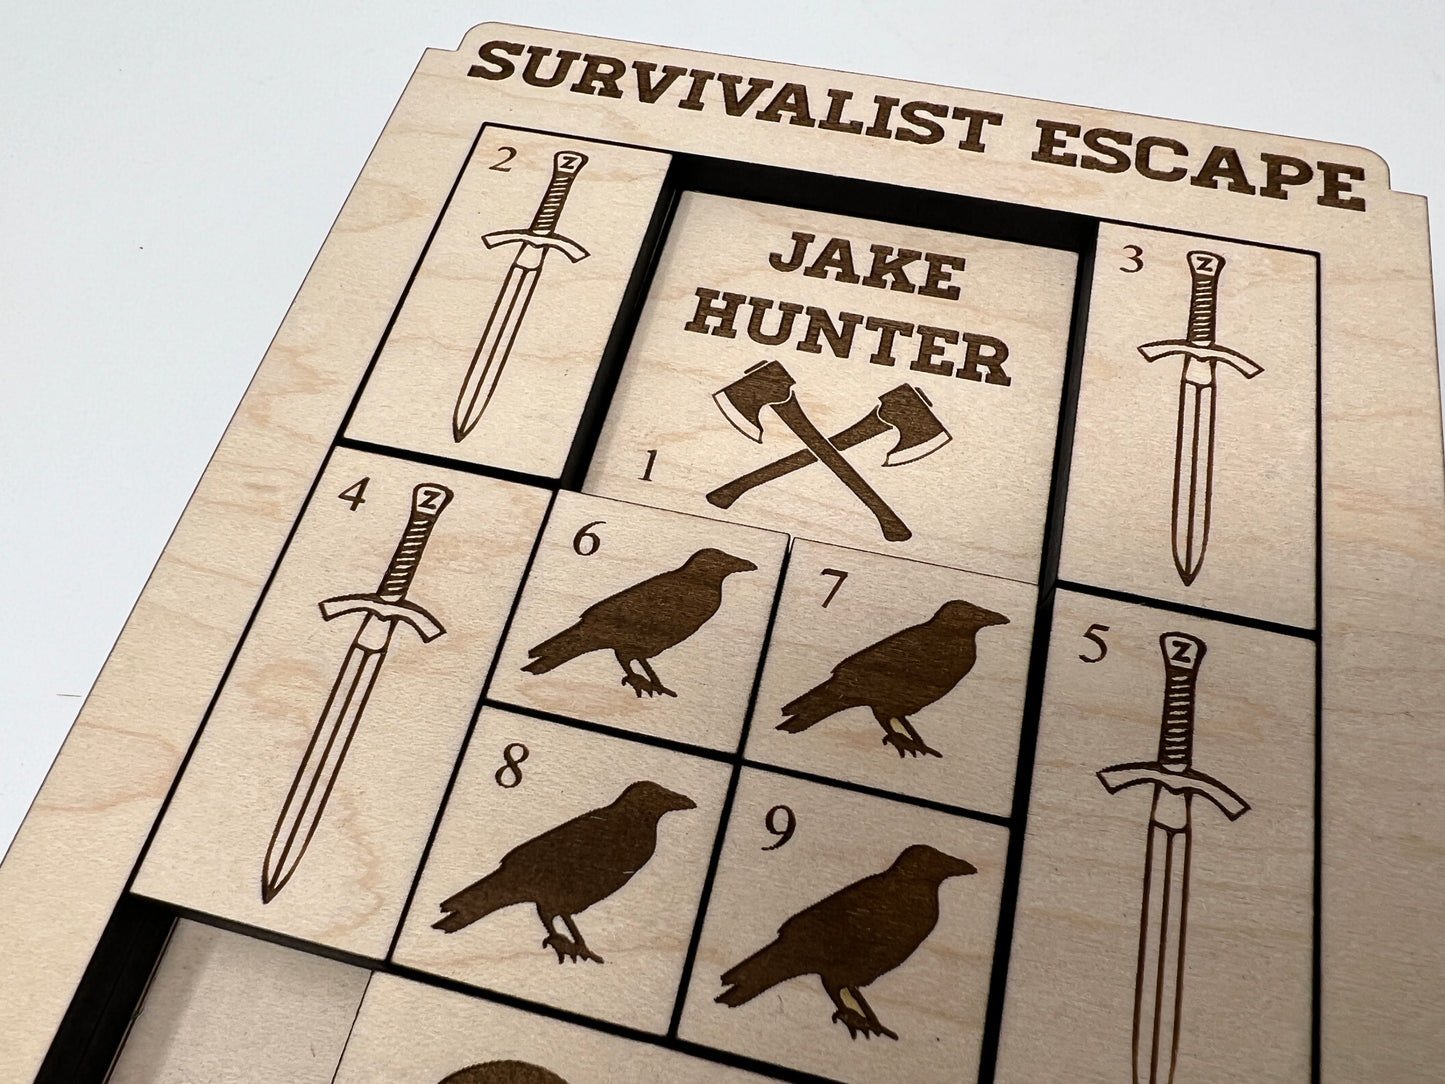 Survivalist Escape Slide Puzzle Game